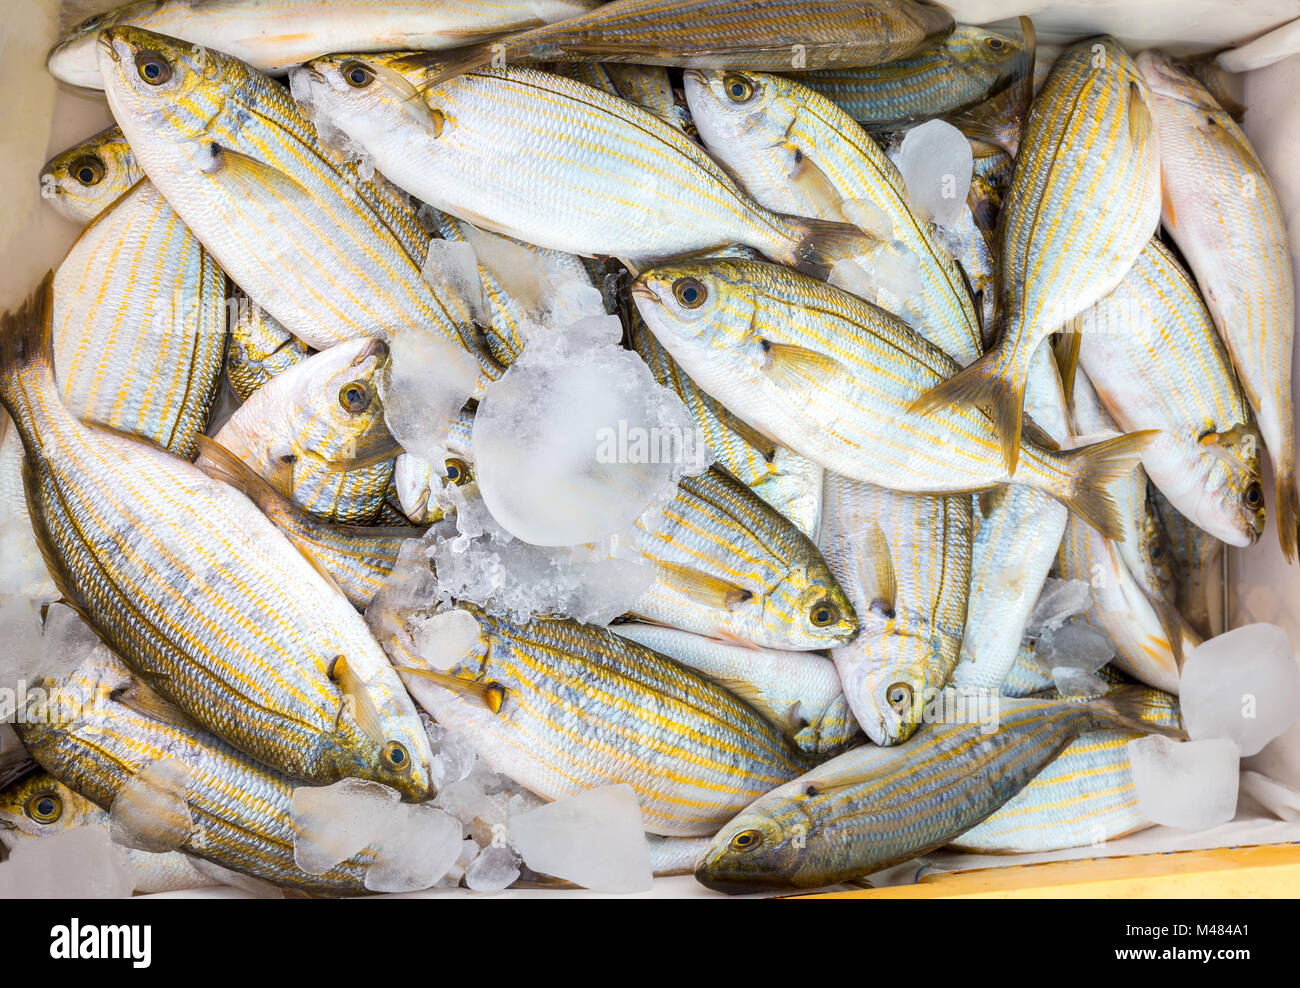 Molti piccoli catturati i pesci morti con ghiaccio sul mercato Foto Stock